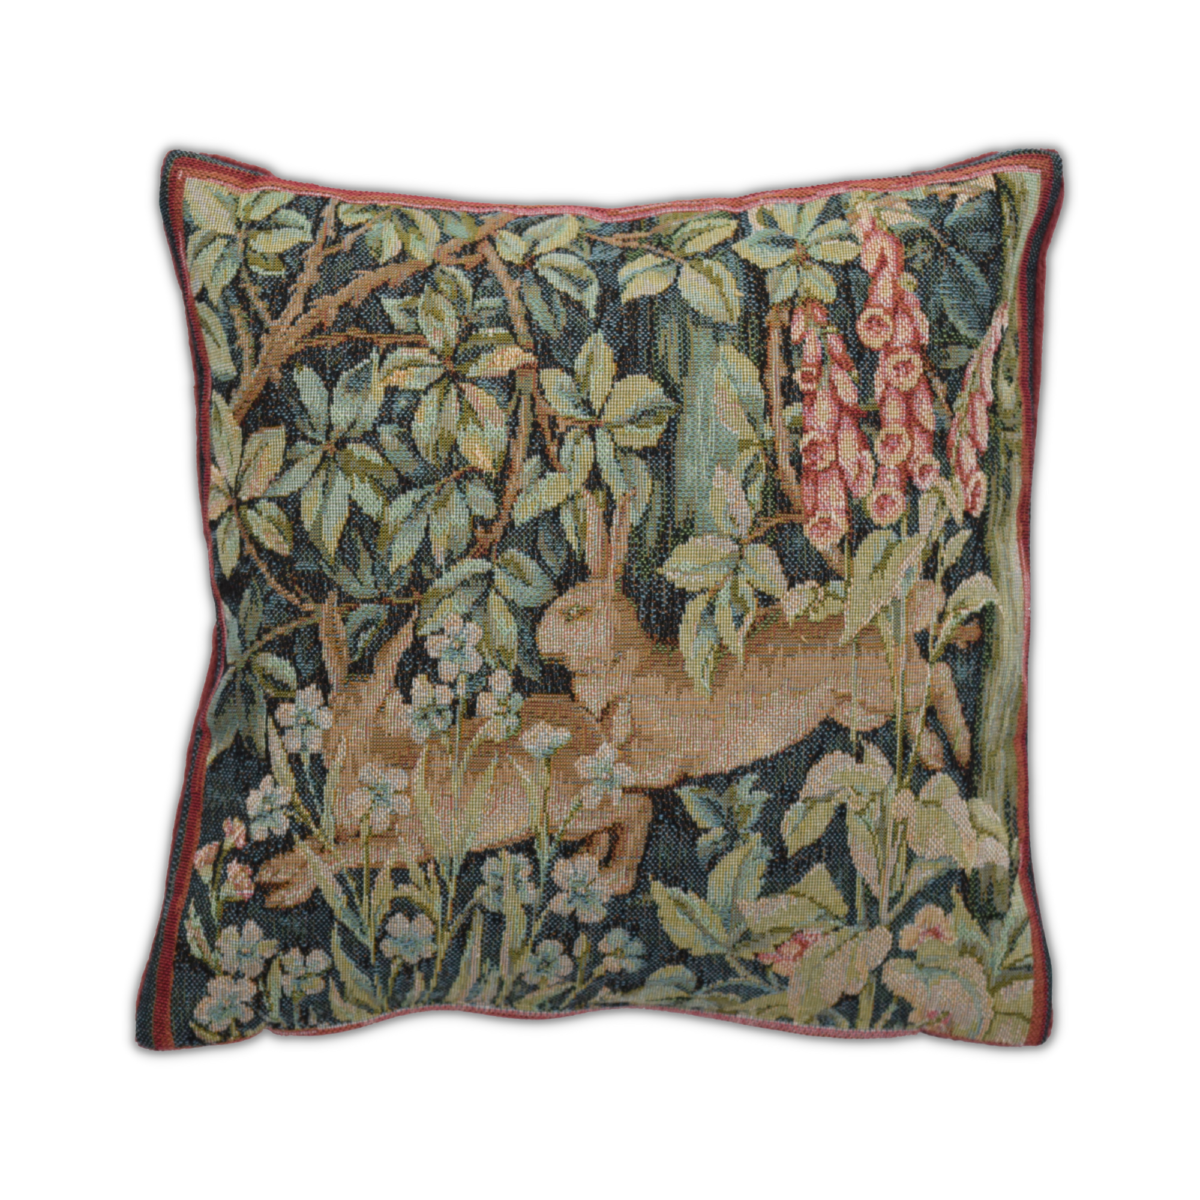 Image of Woodland Rabbit Cushion Cover